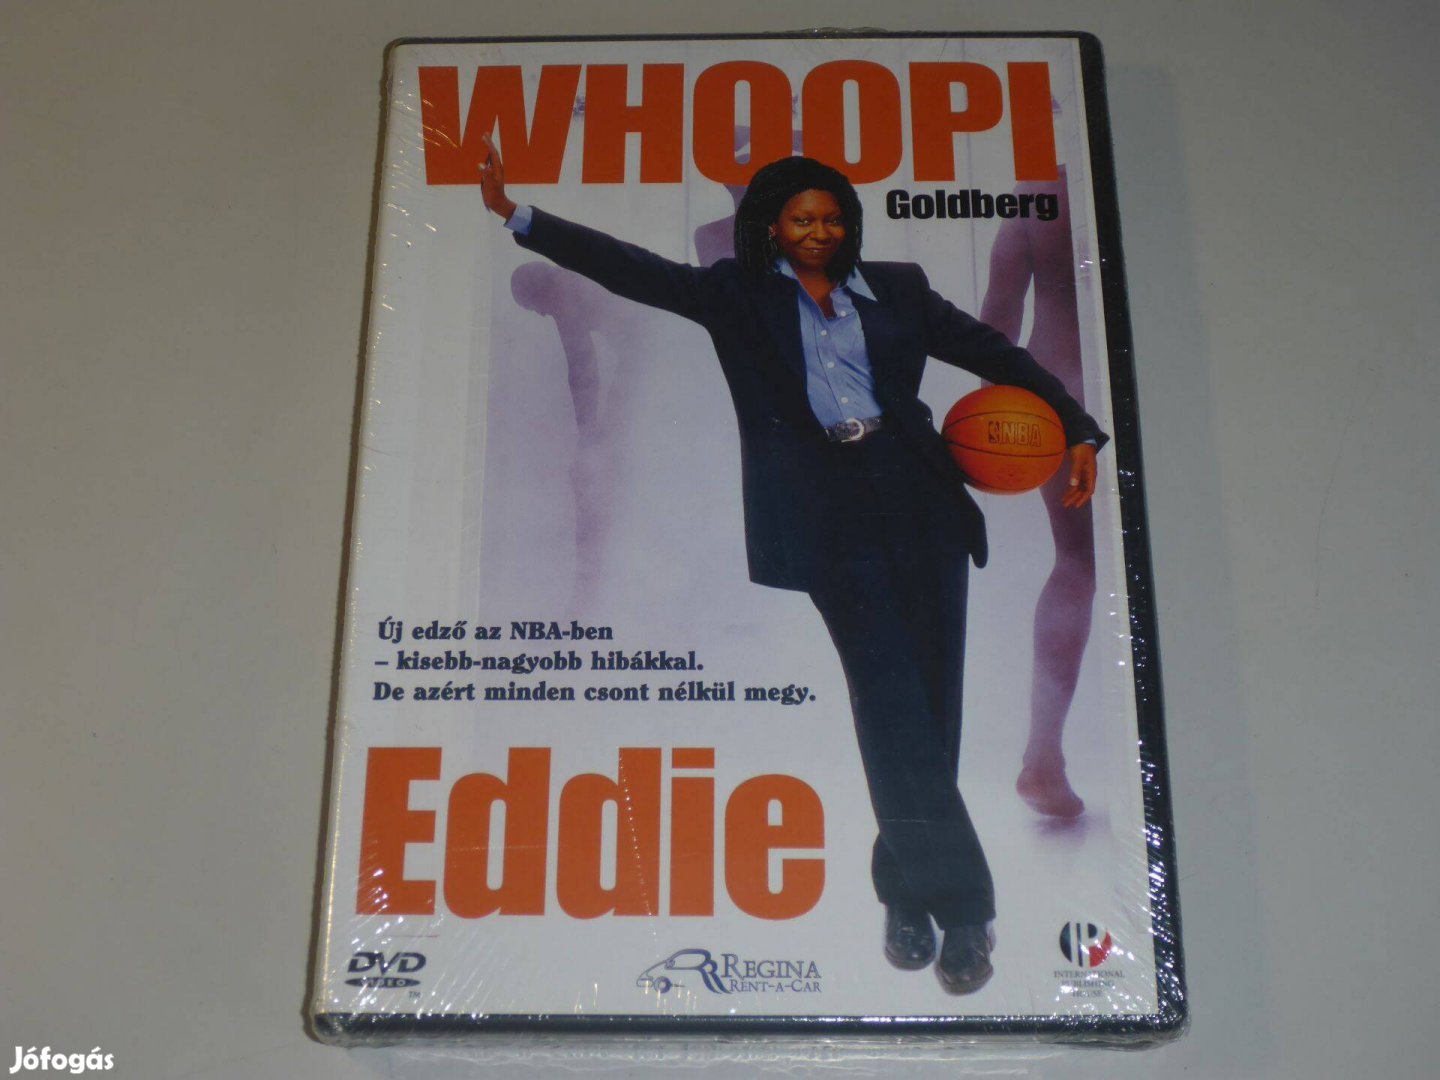 Eddie DVD film "